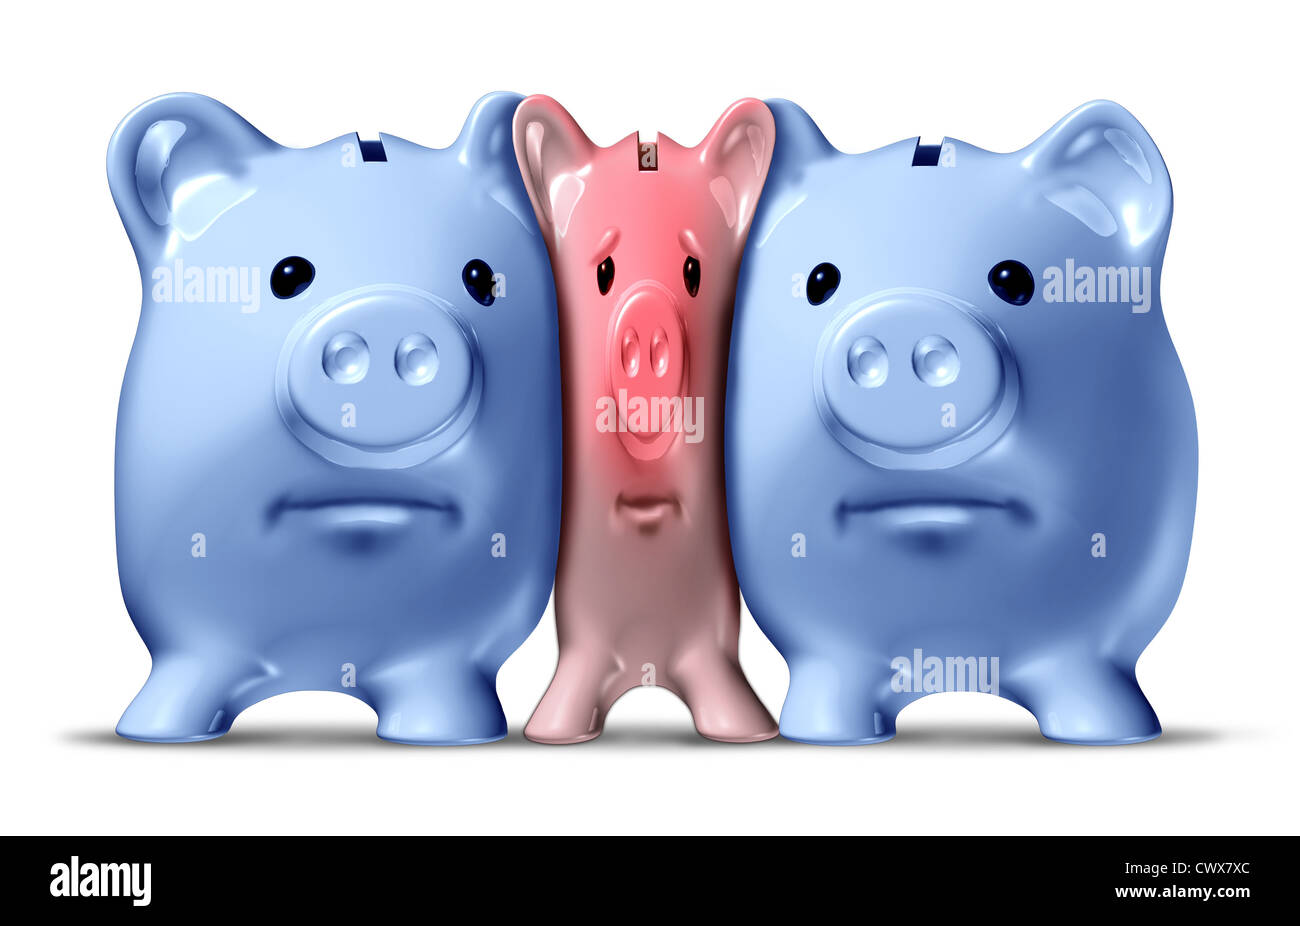 Geld Crunch und finanziellen Engpässen oder Kreditklemme als gequetscht und gedrückt rosa Piggy Bank unter Druck von größeren blauen Schweinen als finanzielle Ikone Einsparungen Probleme, die durch wirtschaftlichen Druck durch zu geringe Mittel in Frage gestellt wird. Stockfoto